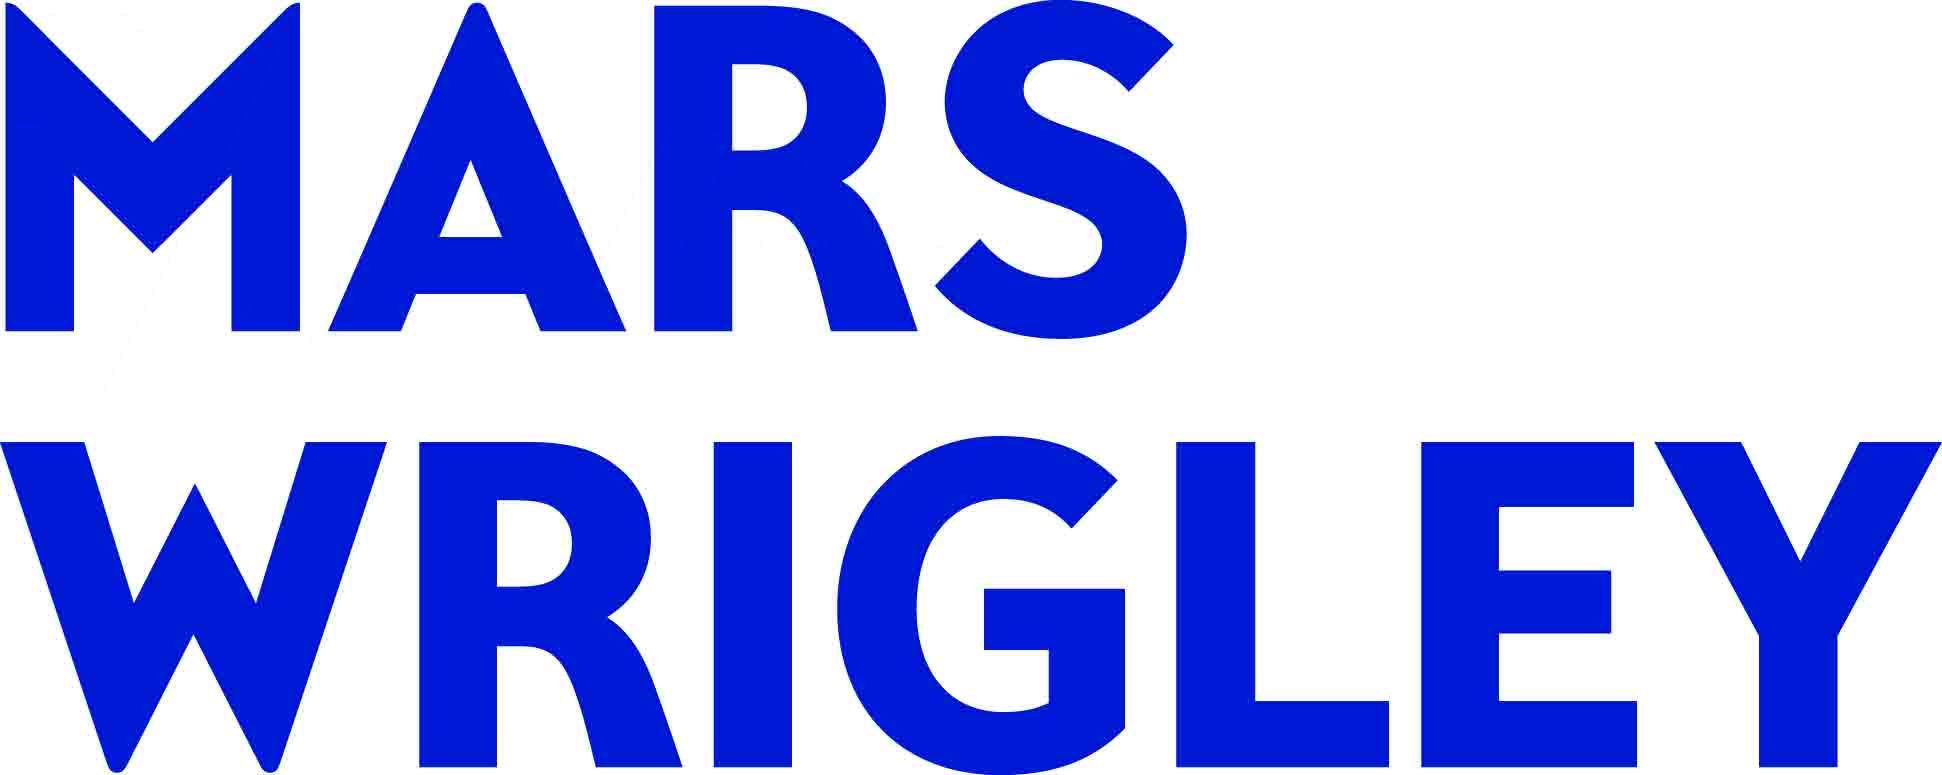 Mars Wrigley Logo